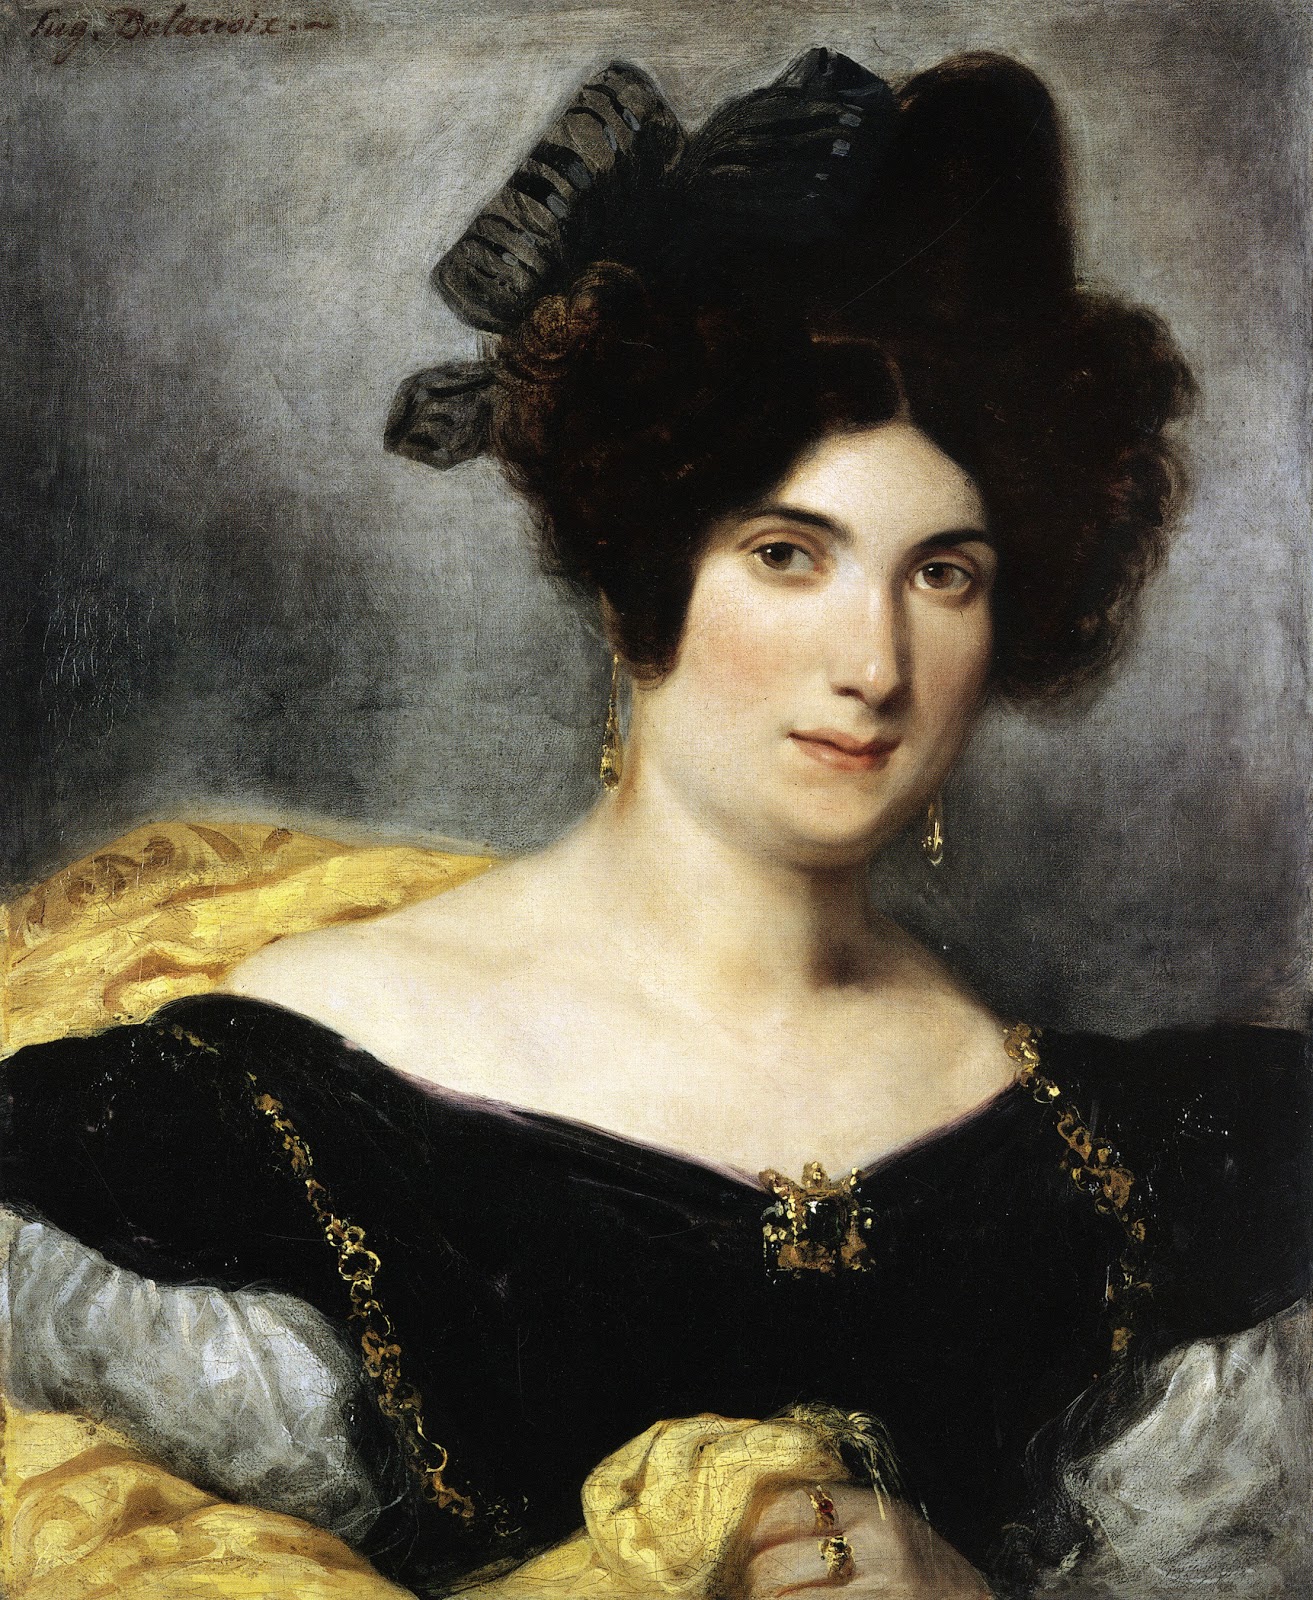 Eugene+Delacroix-1798-1863 (192).jpg